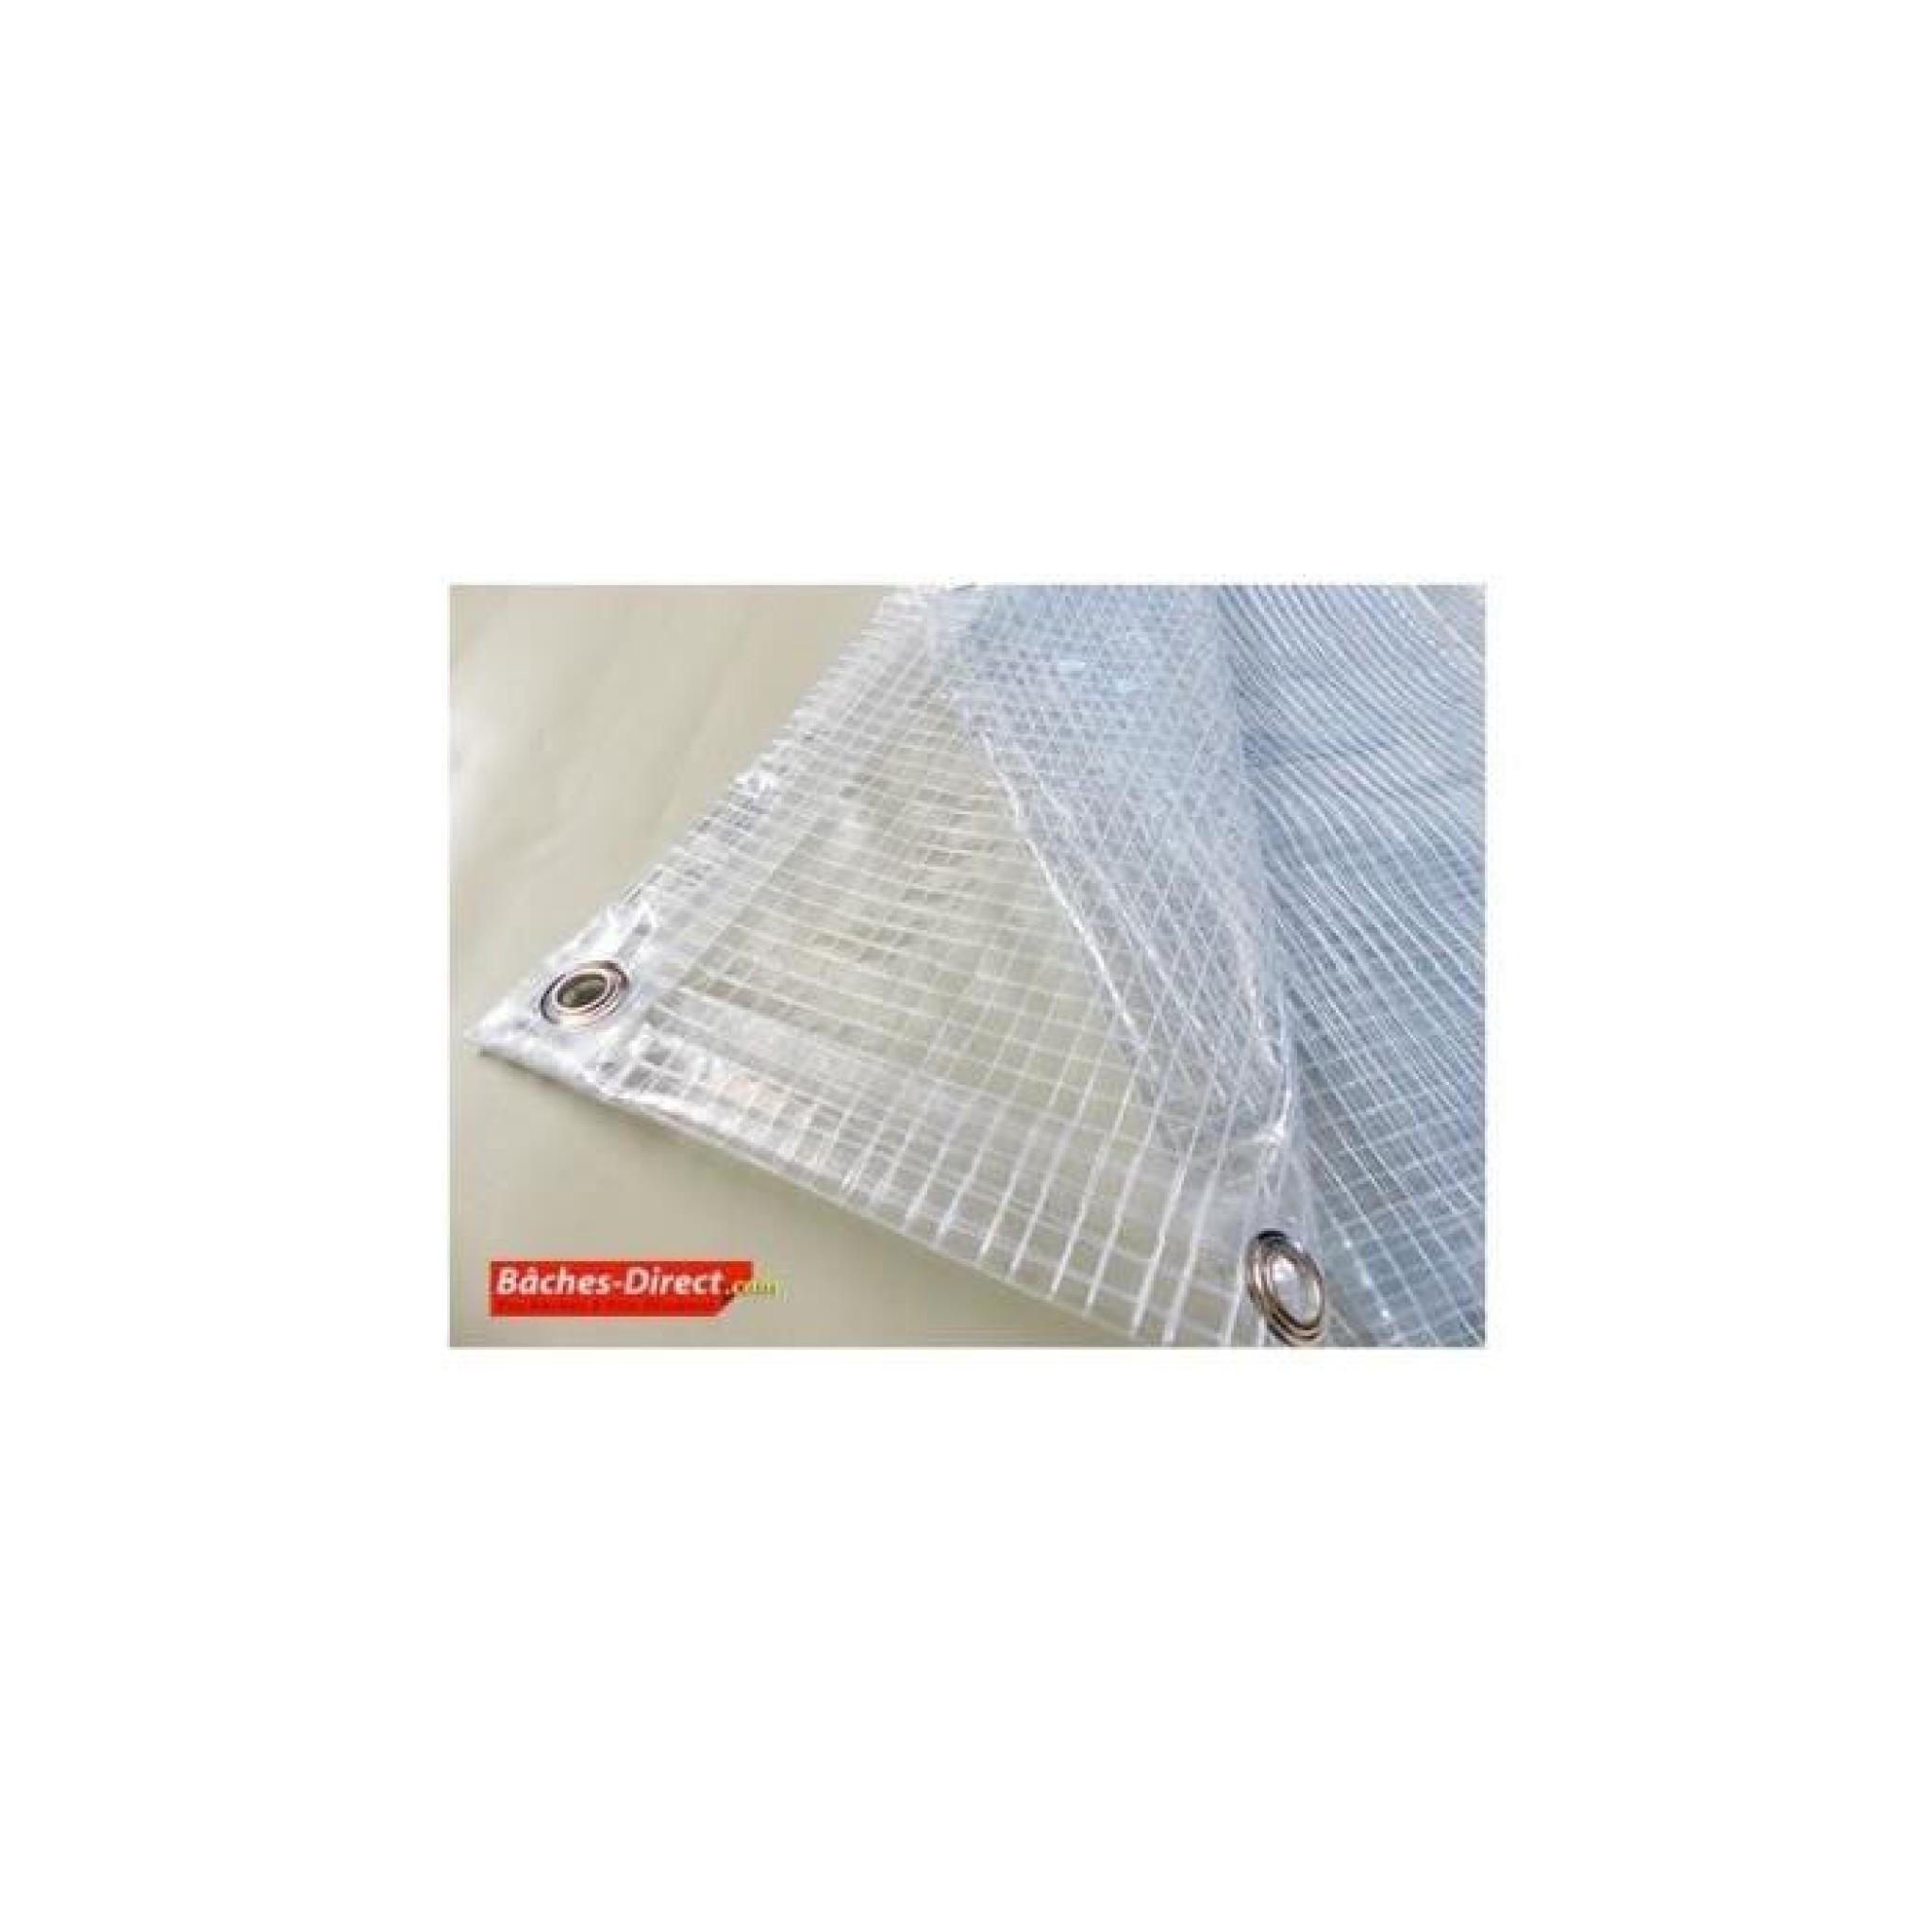 BACHES DIRECT - Bâche Pergola 400 g/m² - 3.8 x 9 m - bache transparente pour toile de pergola - bache imperméable Transparente Armée